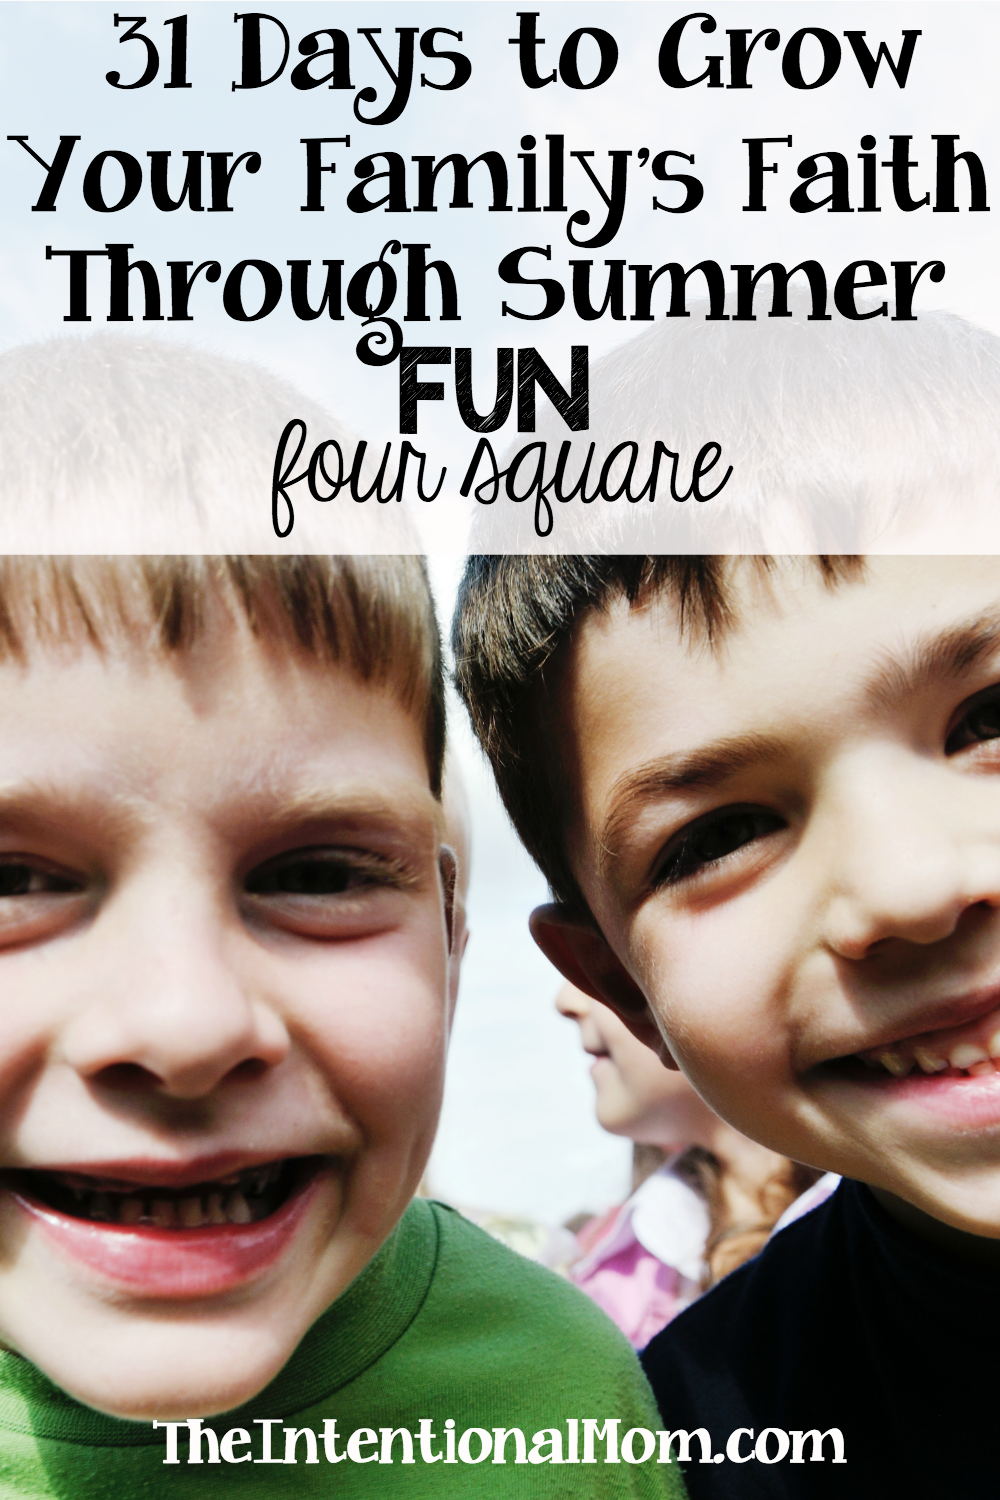 31 Ways to Grow Your Family’s Faith Through Summer Fun – Four Square